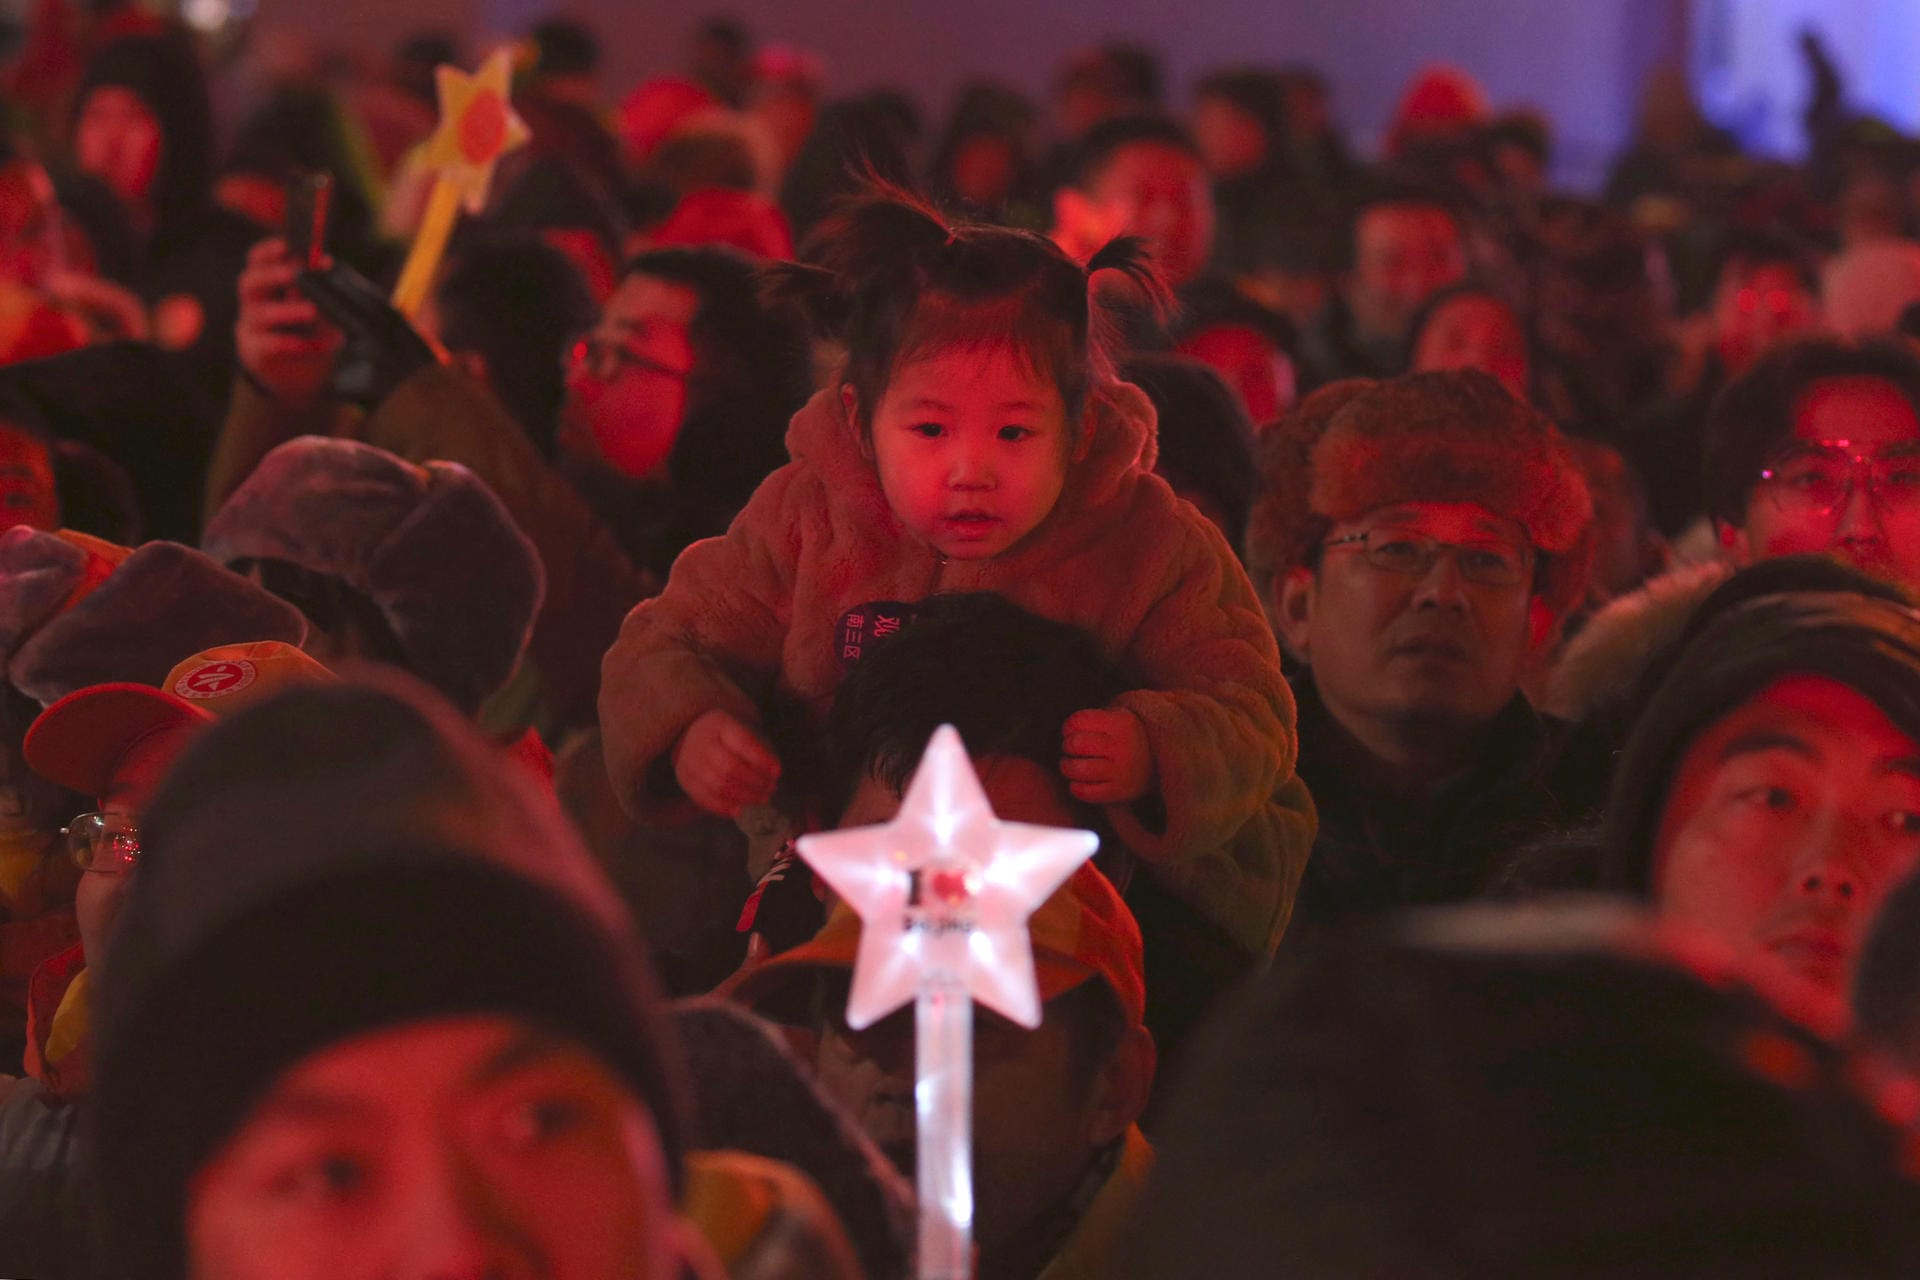 Auch in China begrüßten die Menschen um 17 Uhr unserer Zeit 2019. Die größere Party steigt hier jedoch am 5. Februar. Dann feiern die Chinesen auch nach ihrem Mondkalender das neue Jahr.